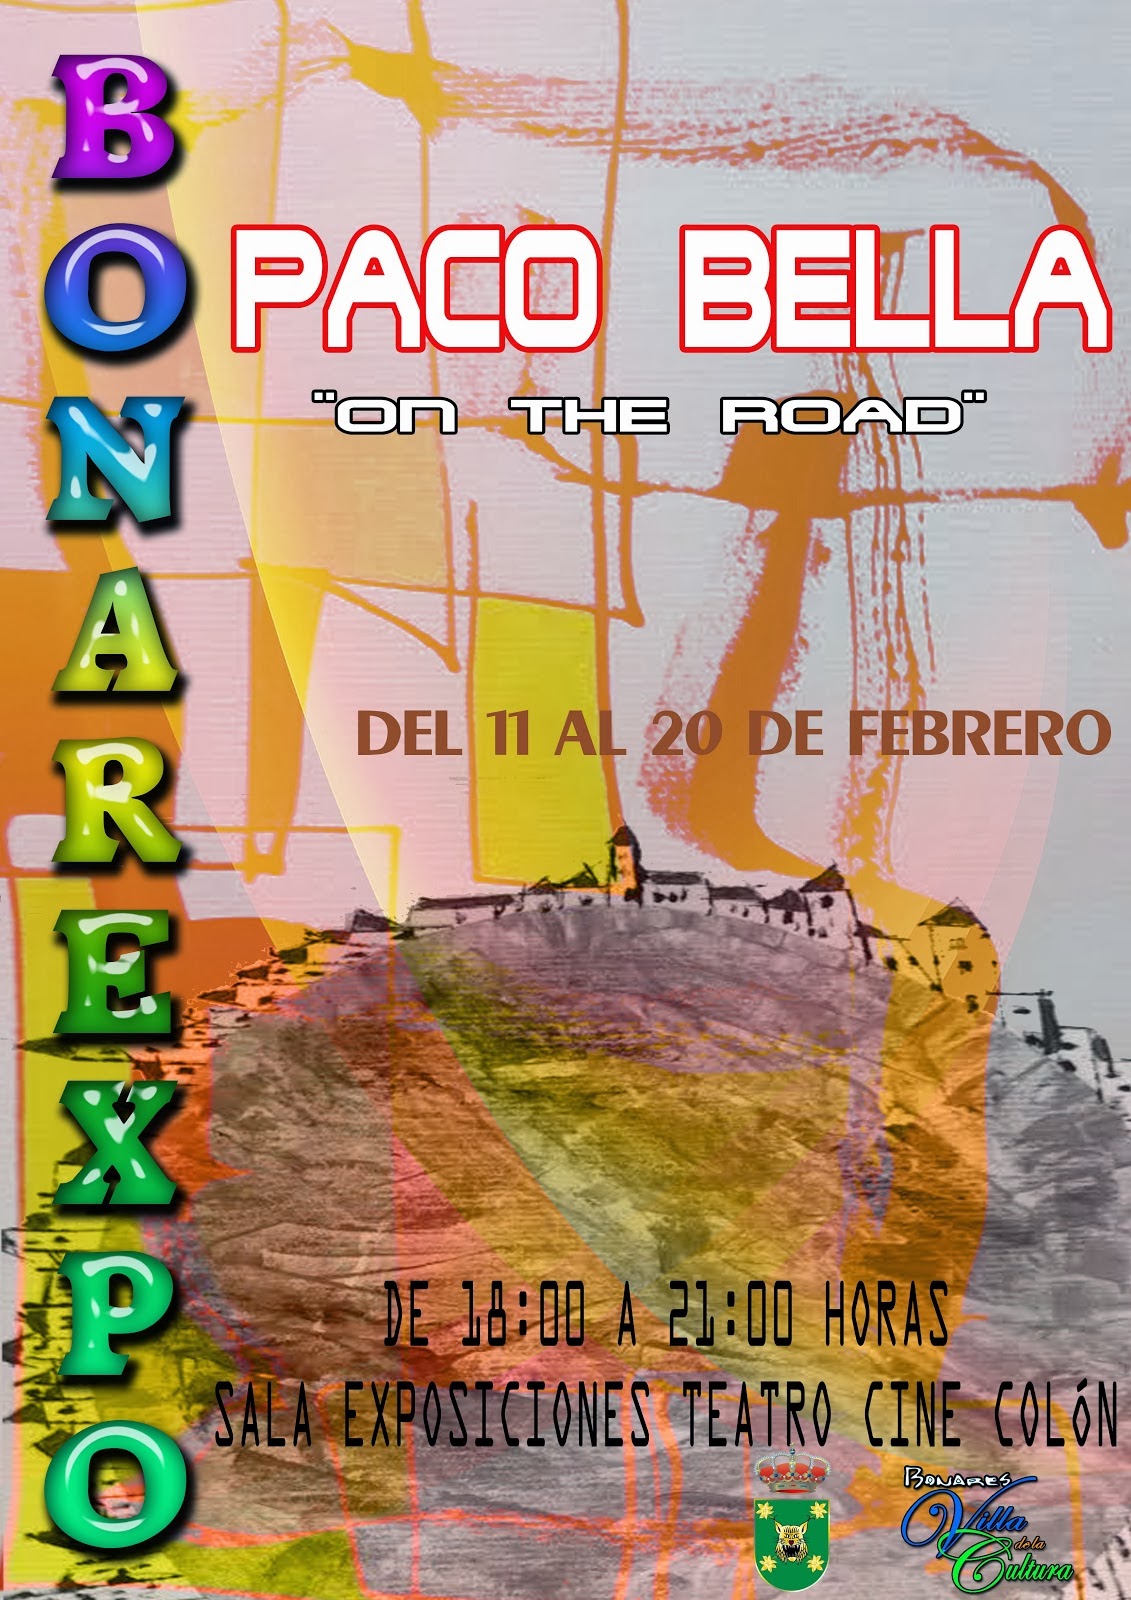 "ON THE ROAD" DE PACO BELLA